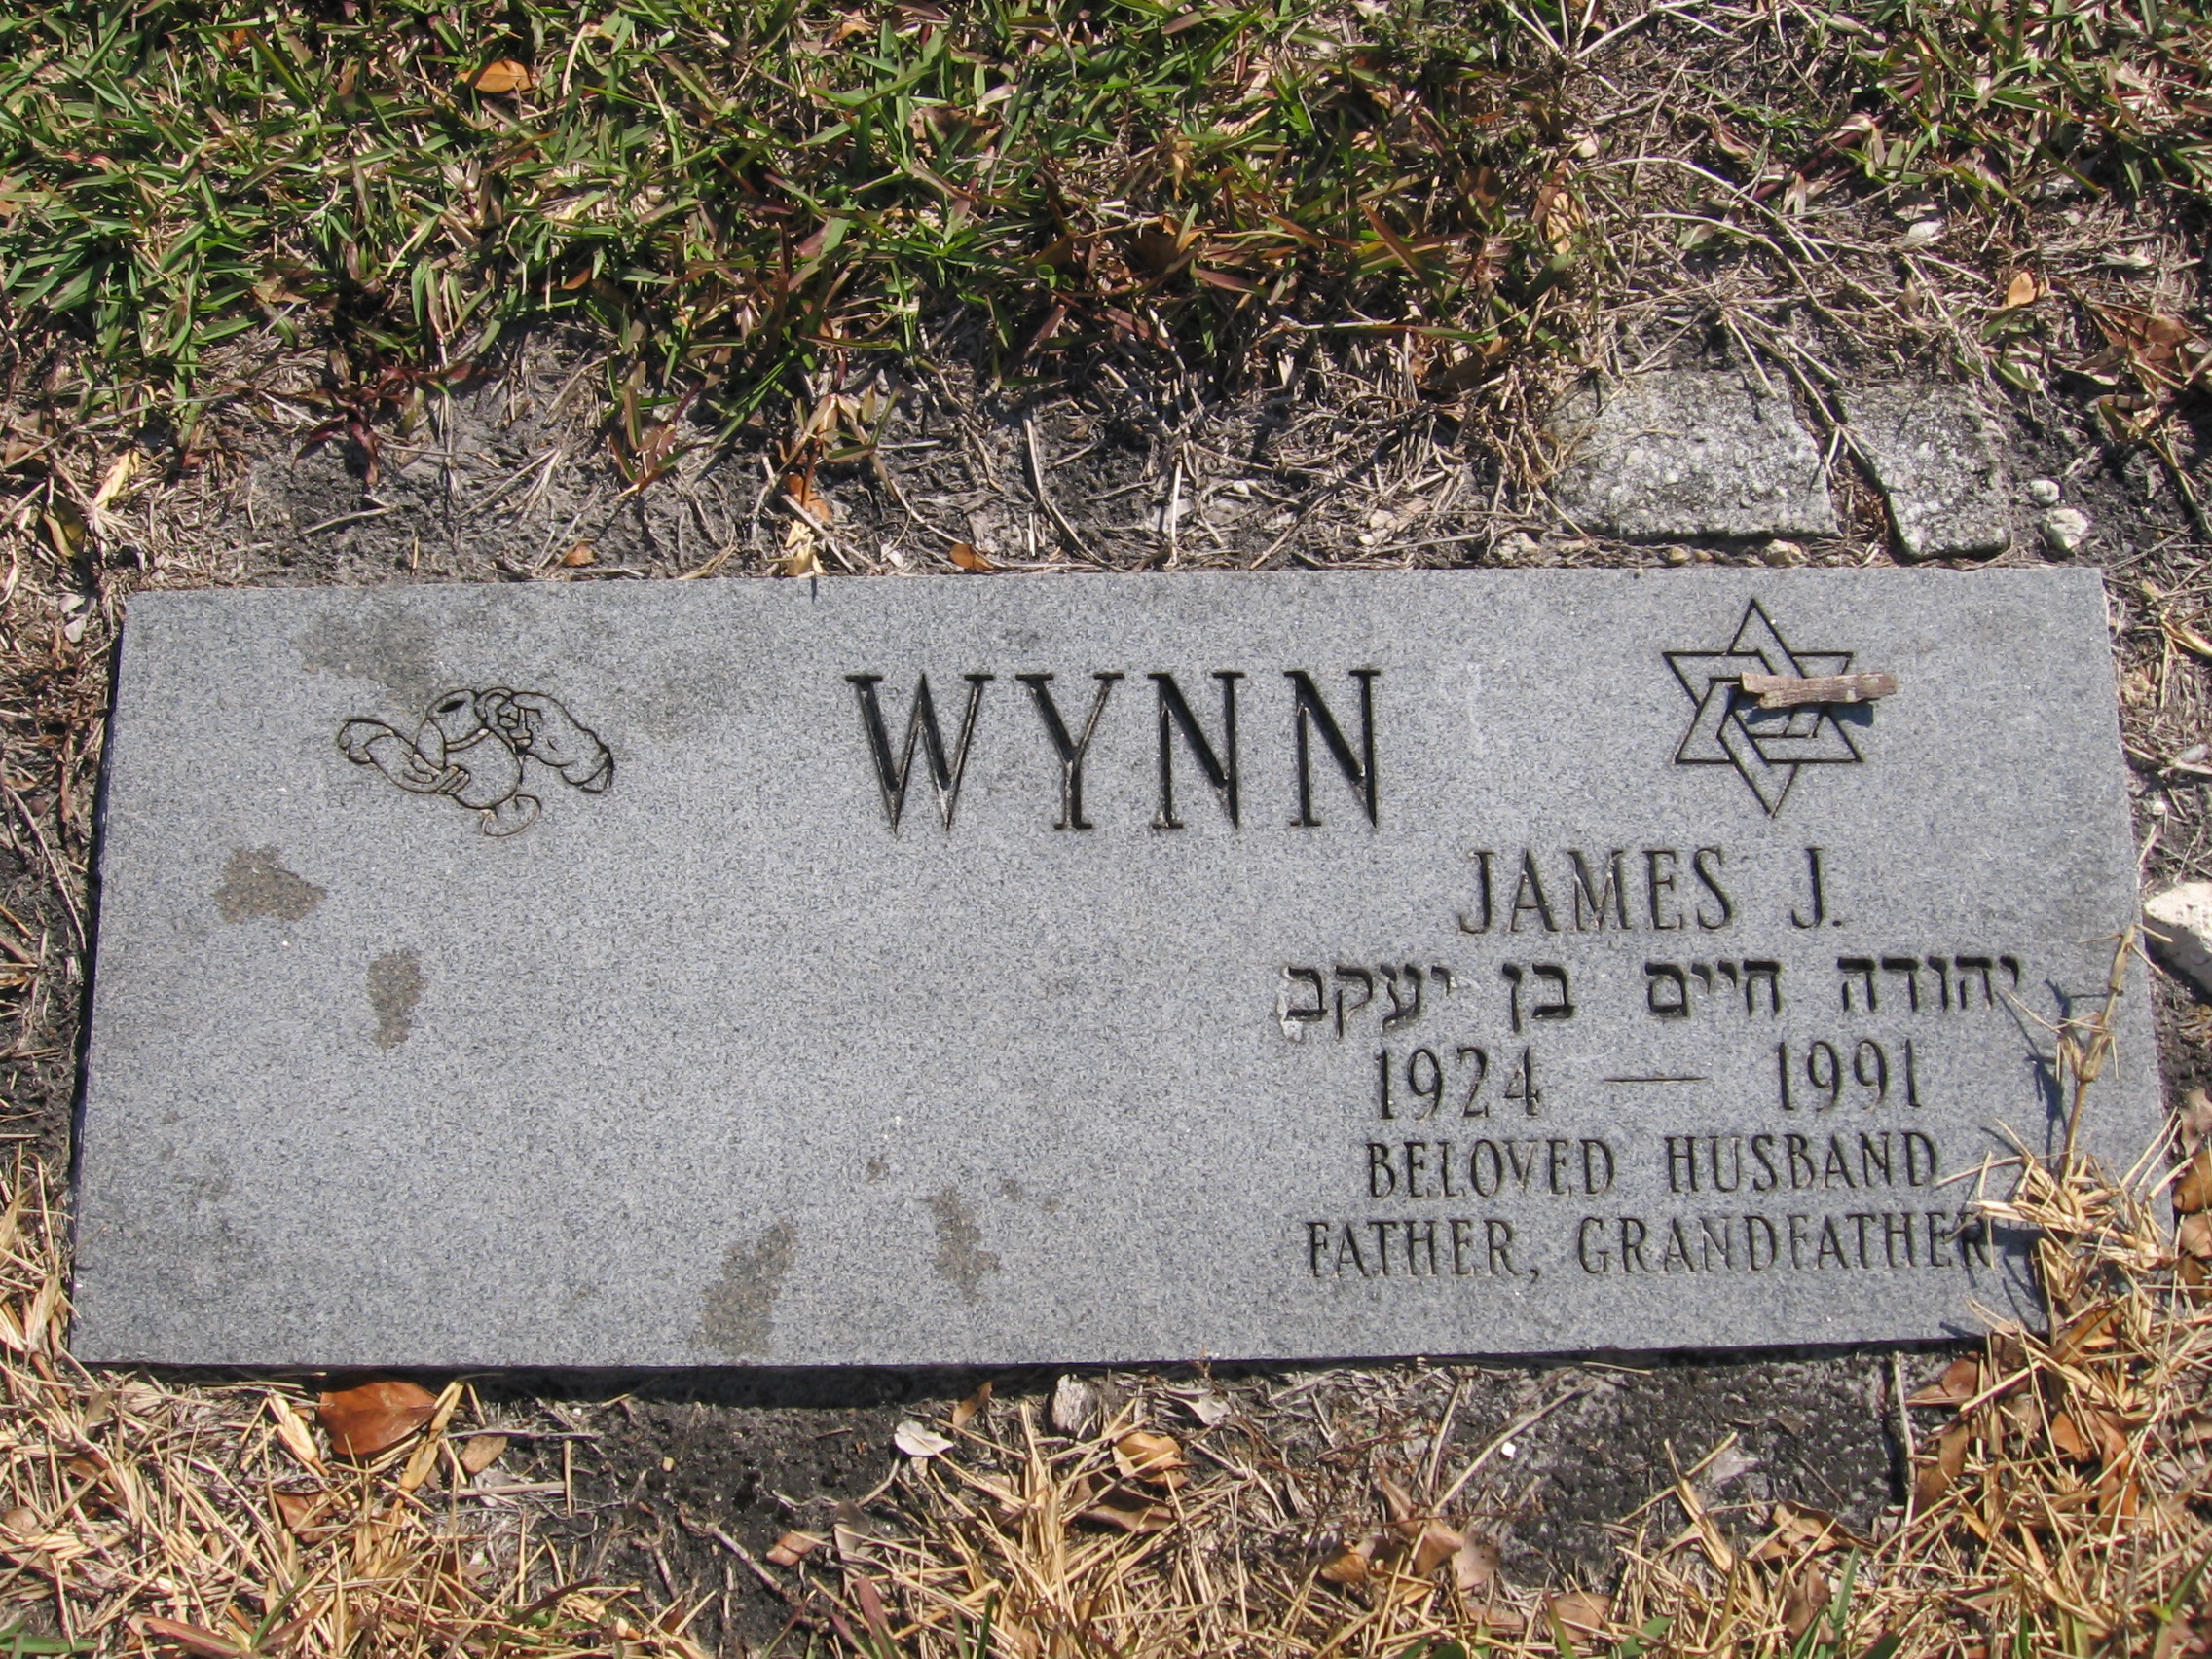 James J Wynn